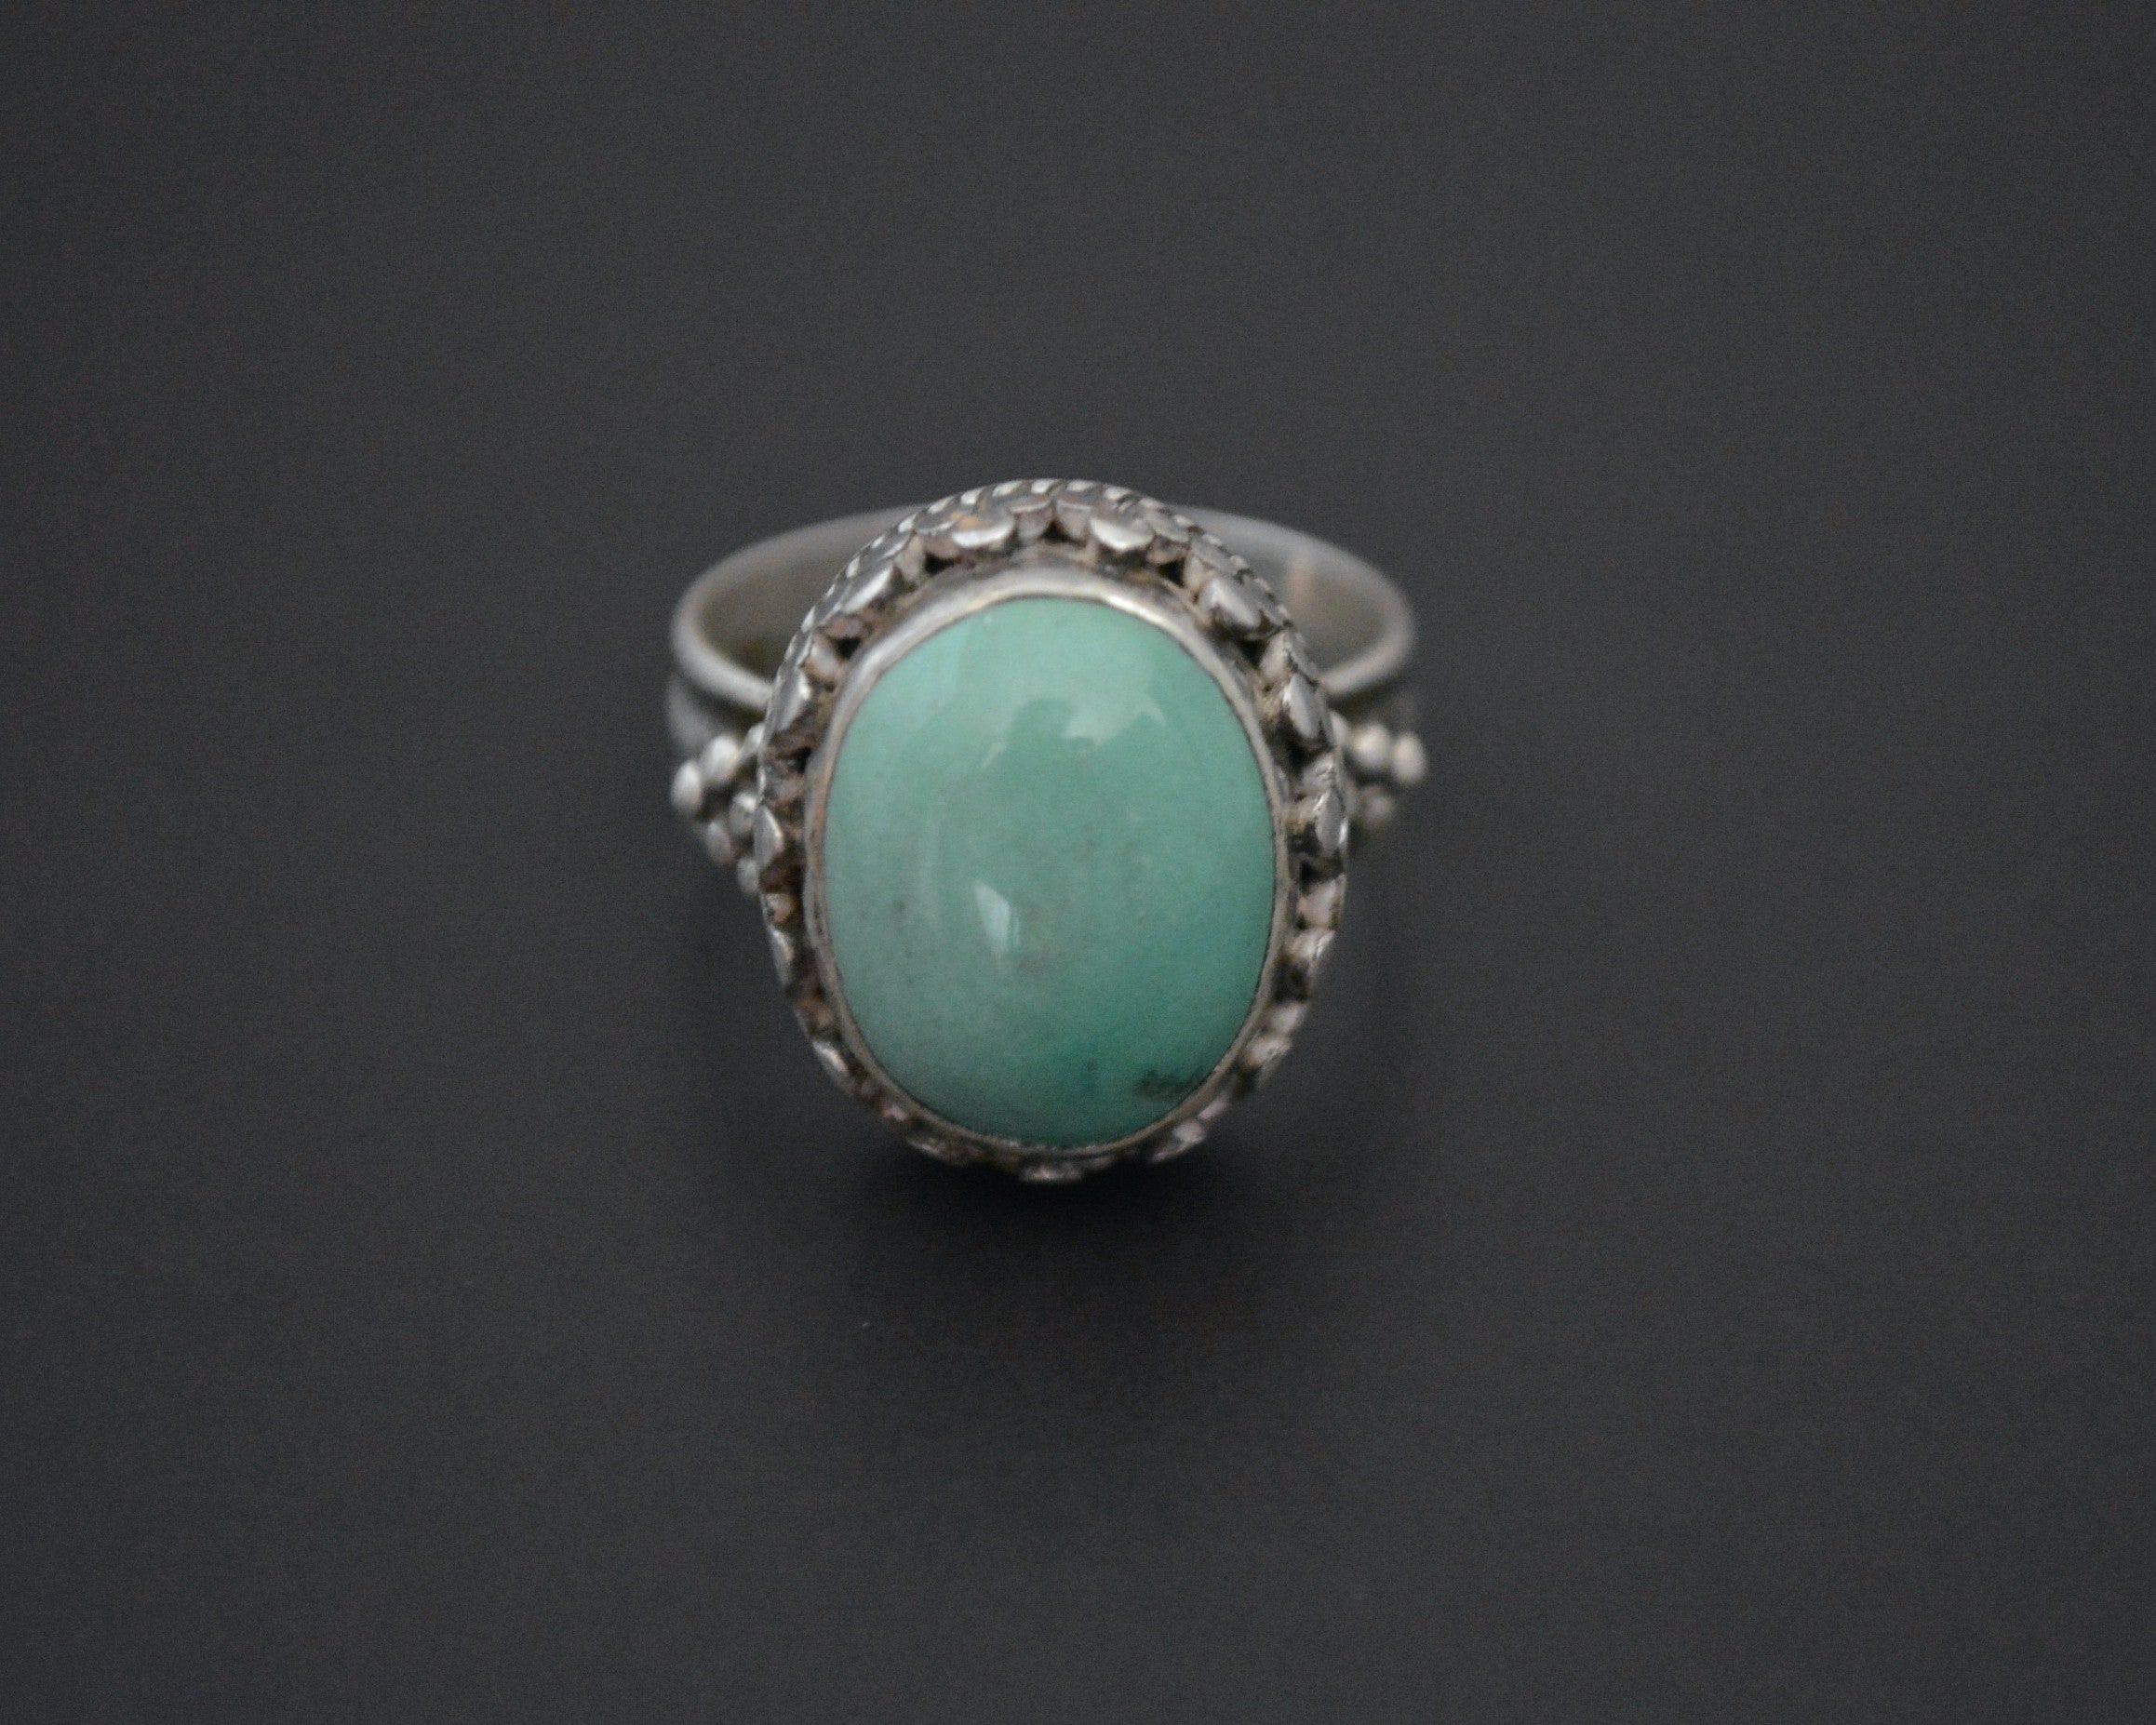 Nepali Turquoise Ring - Size 8.5